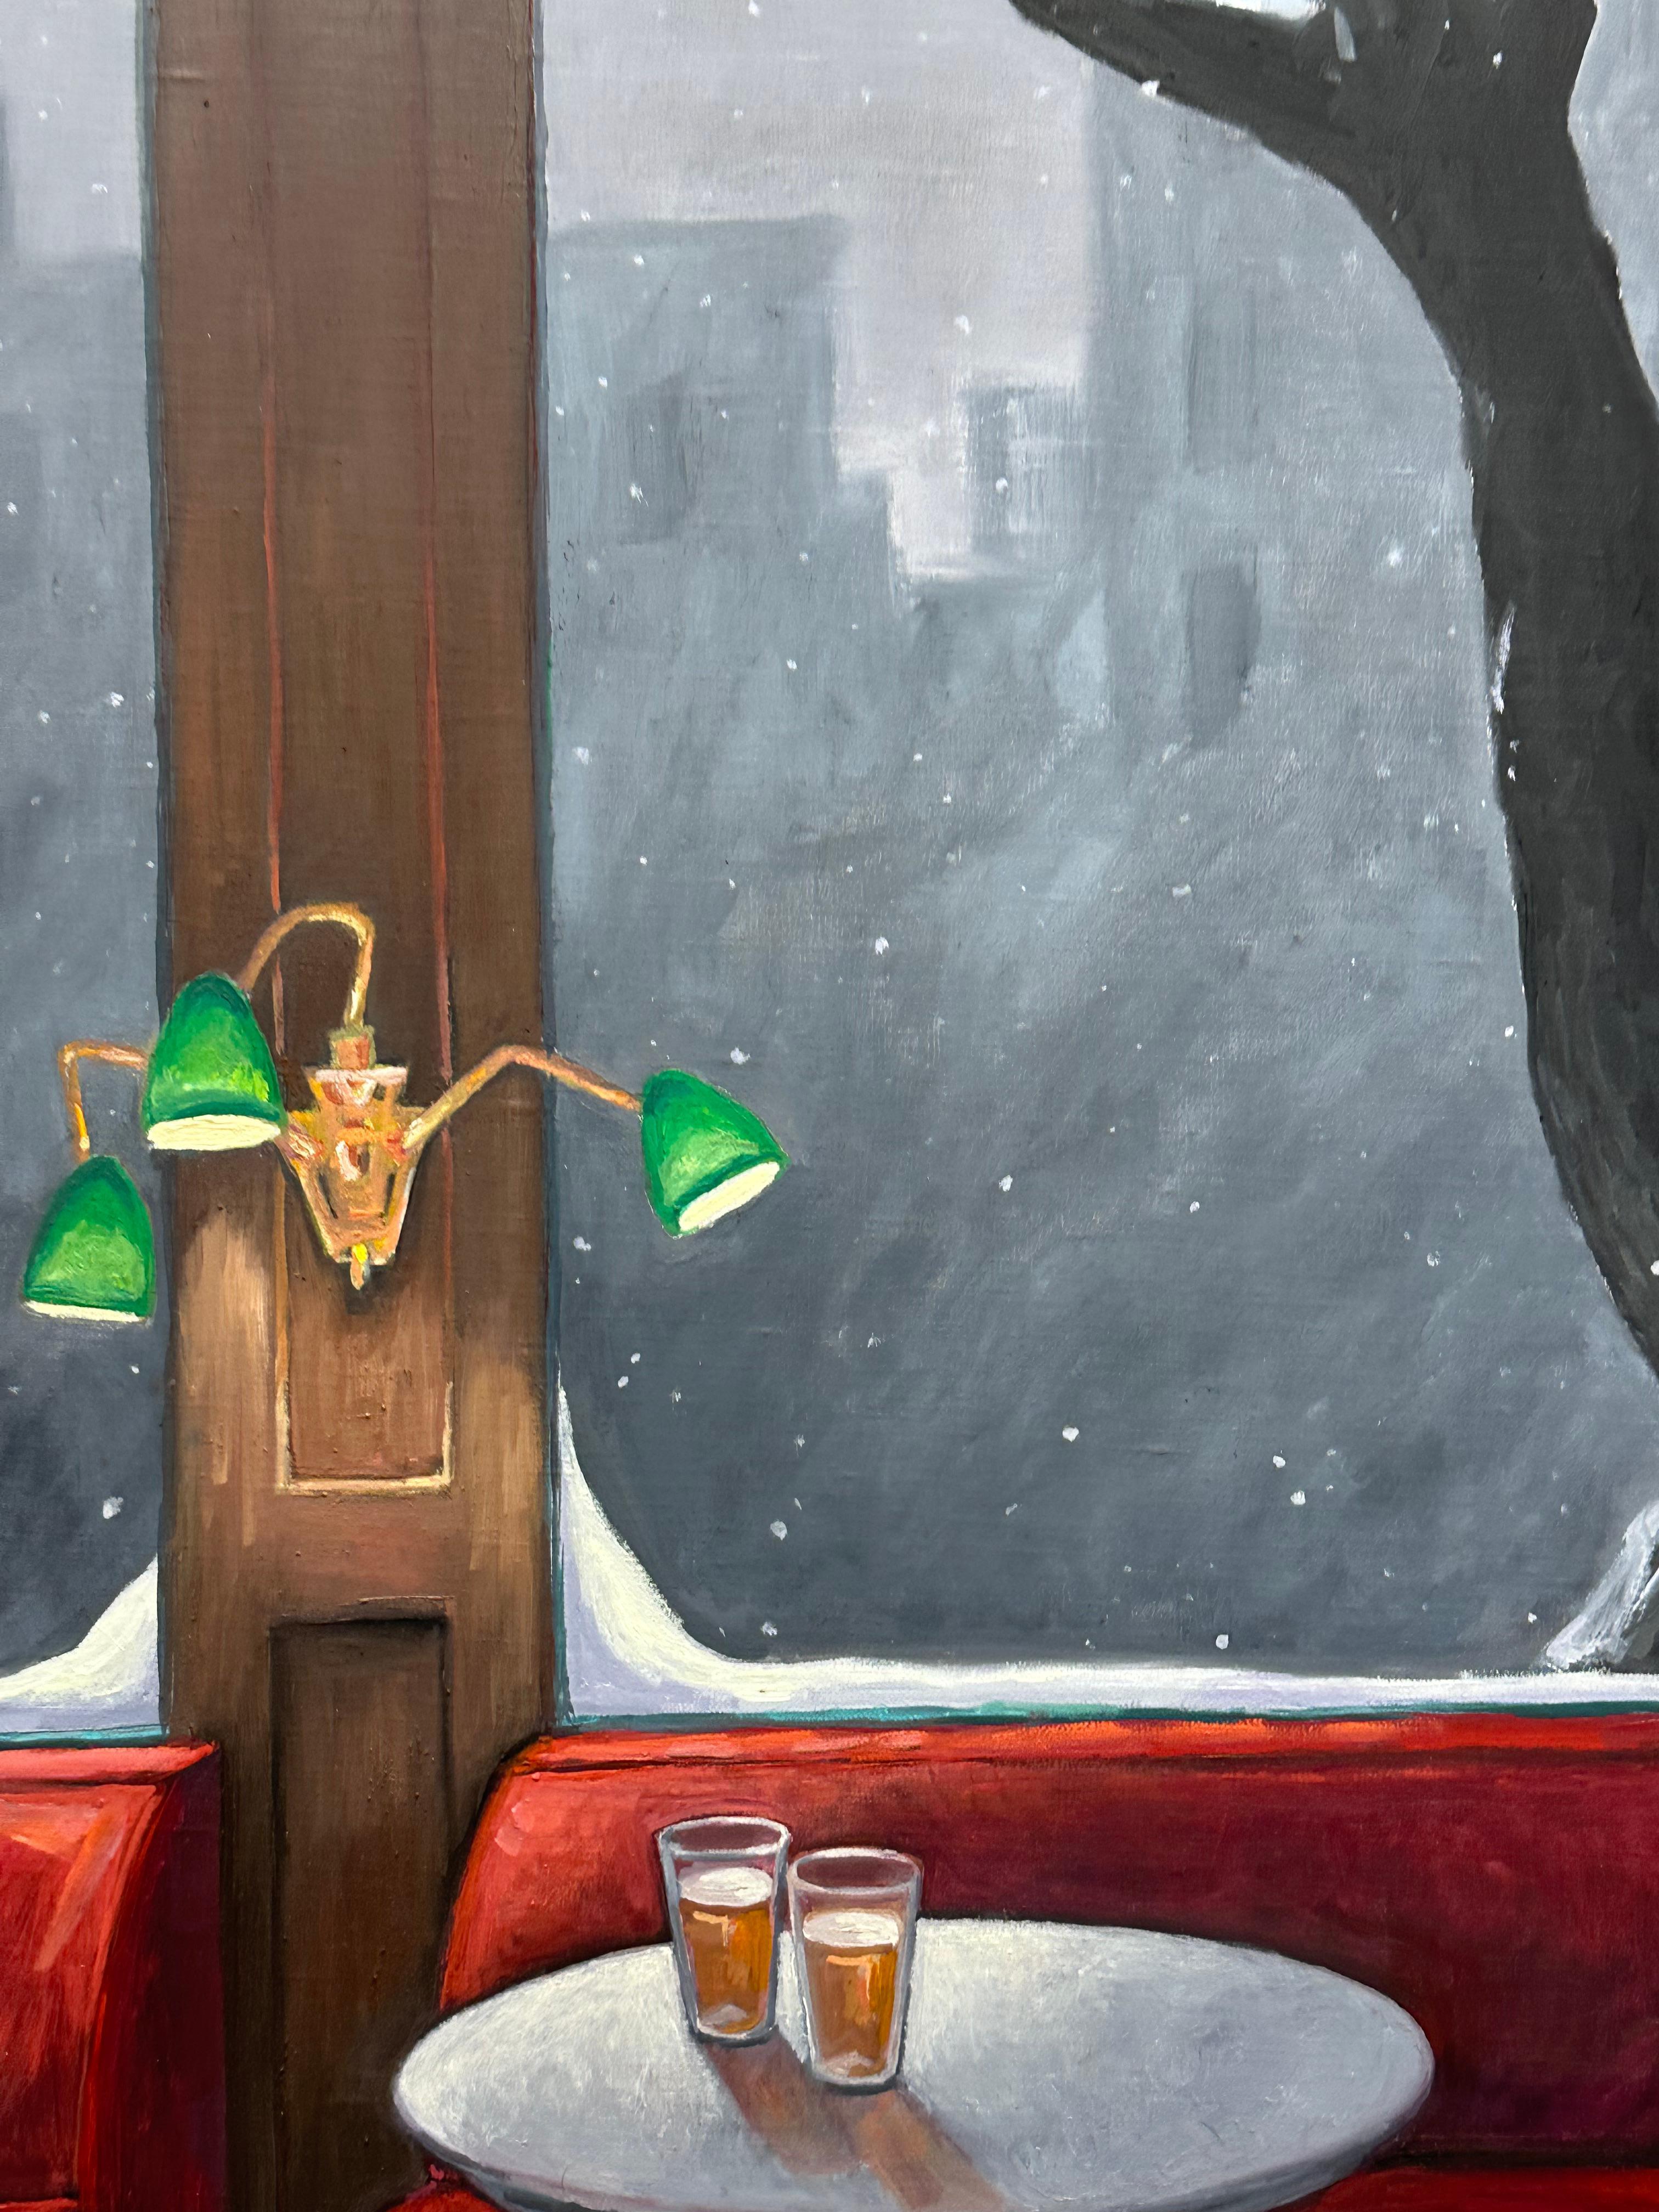 Deux verres de bière sont posés sur une petite table ronde, éclairés par une applique verte et encadrés par une scène enneigée à l'extérieur de la fenêtre du bar confortable dans cette paisible nature morte hivernale de KK Kozik. Signé, daté et